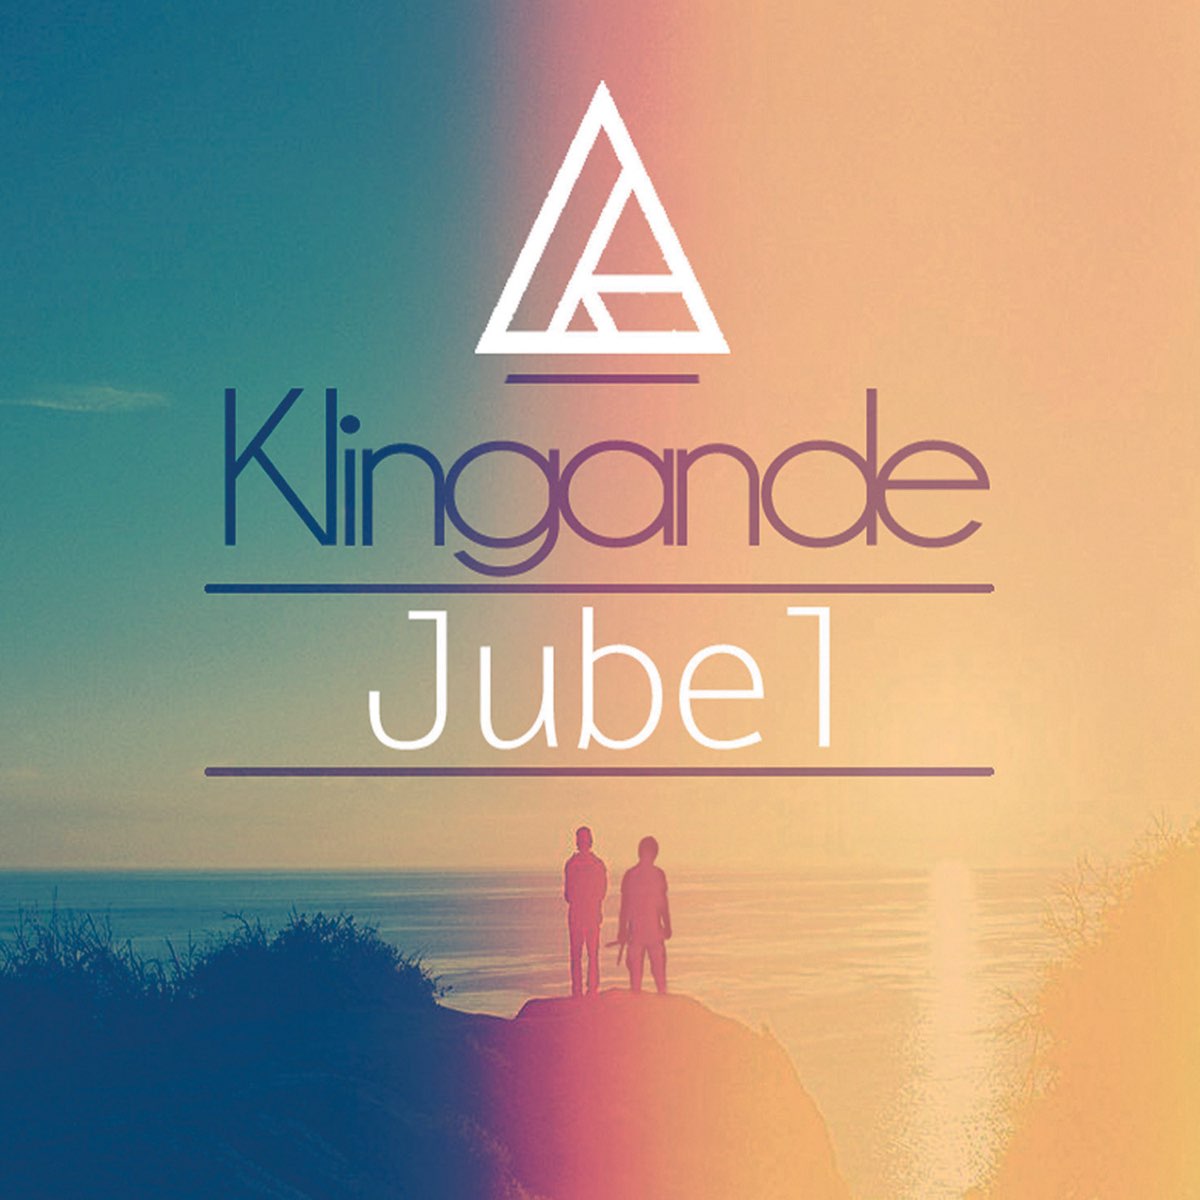 Альбом "Jubel - Single" (Klingande) .